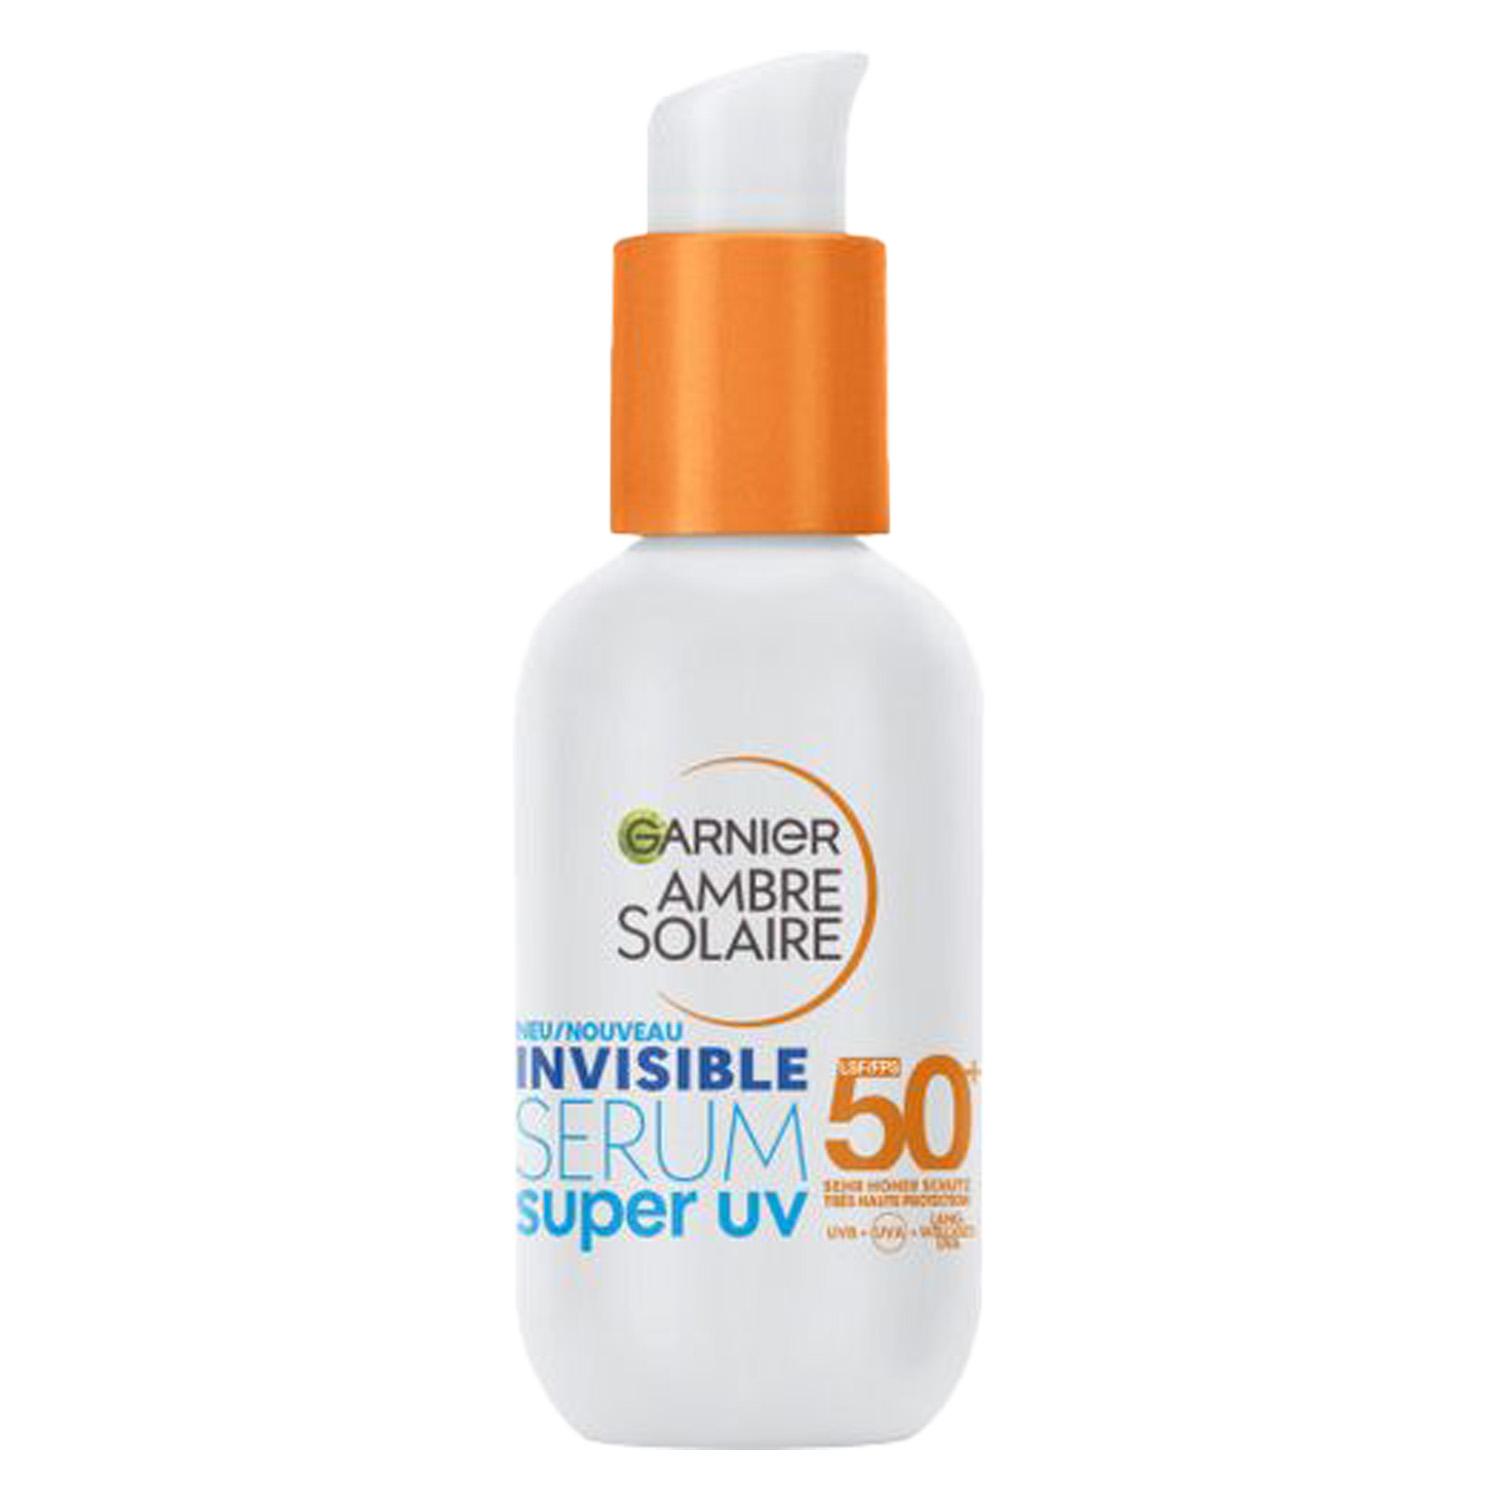 Ambre Solaire - Invisible Serum Super UV Sunscreen Serum SPF 50+